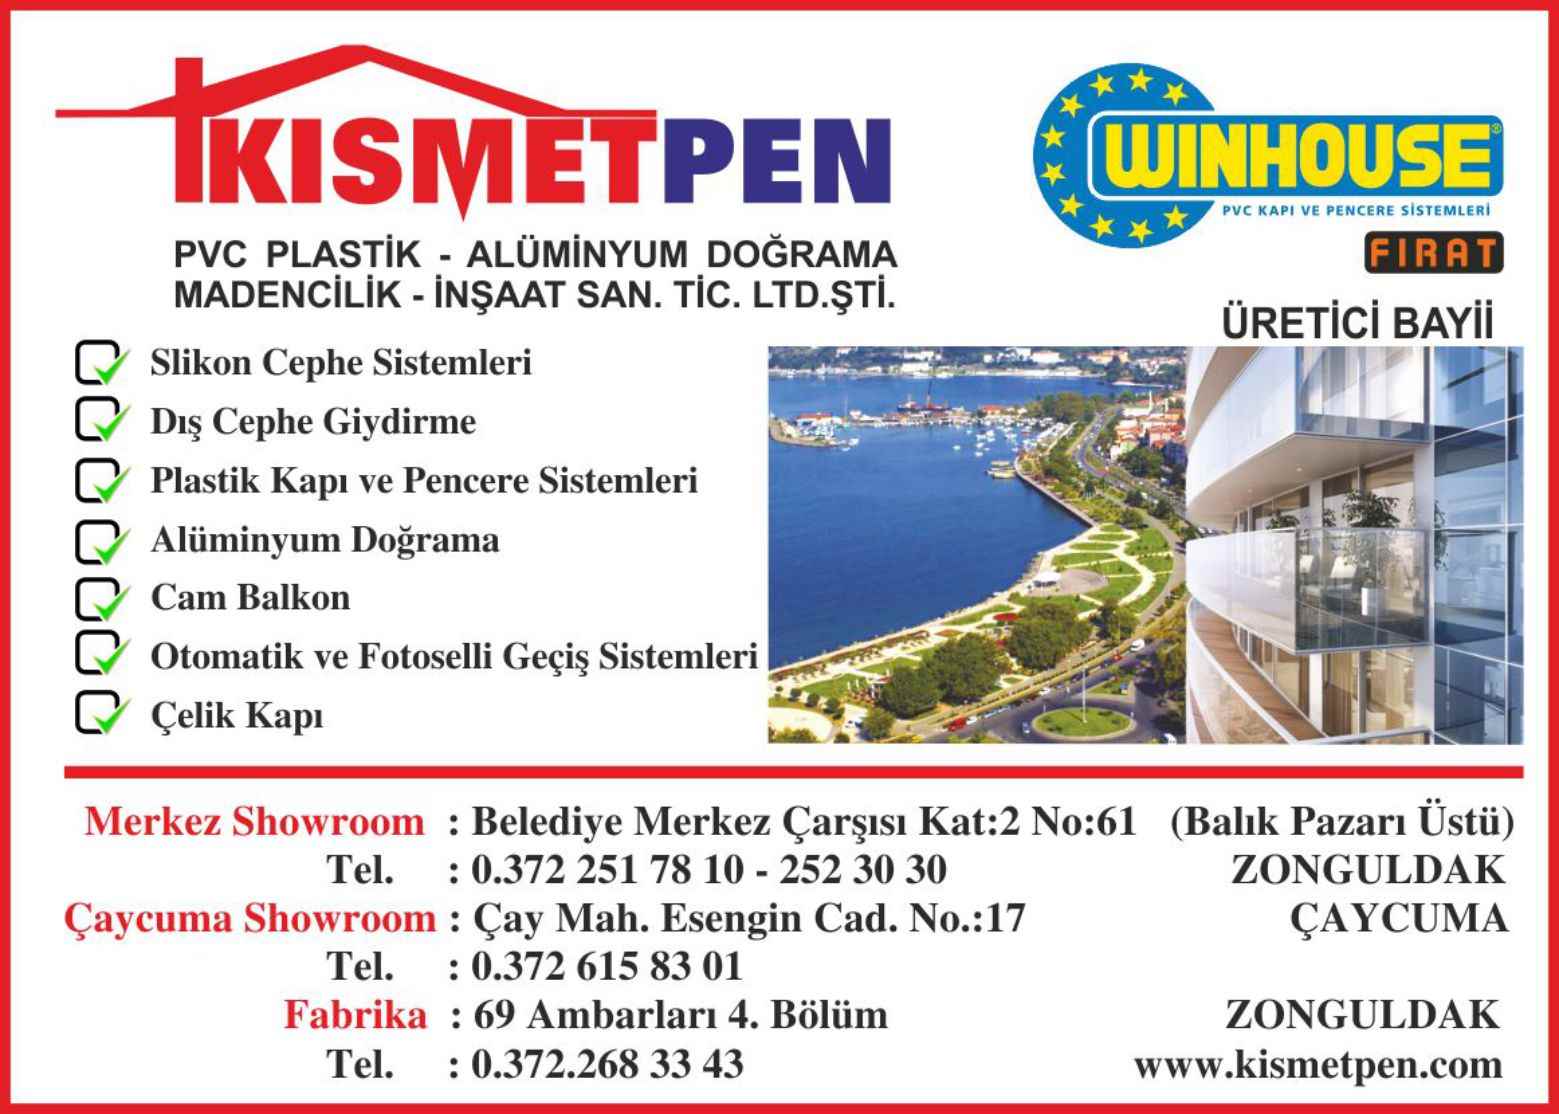 Kısmet Pen Zonguldak